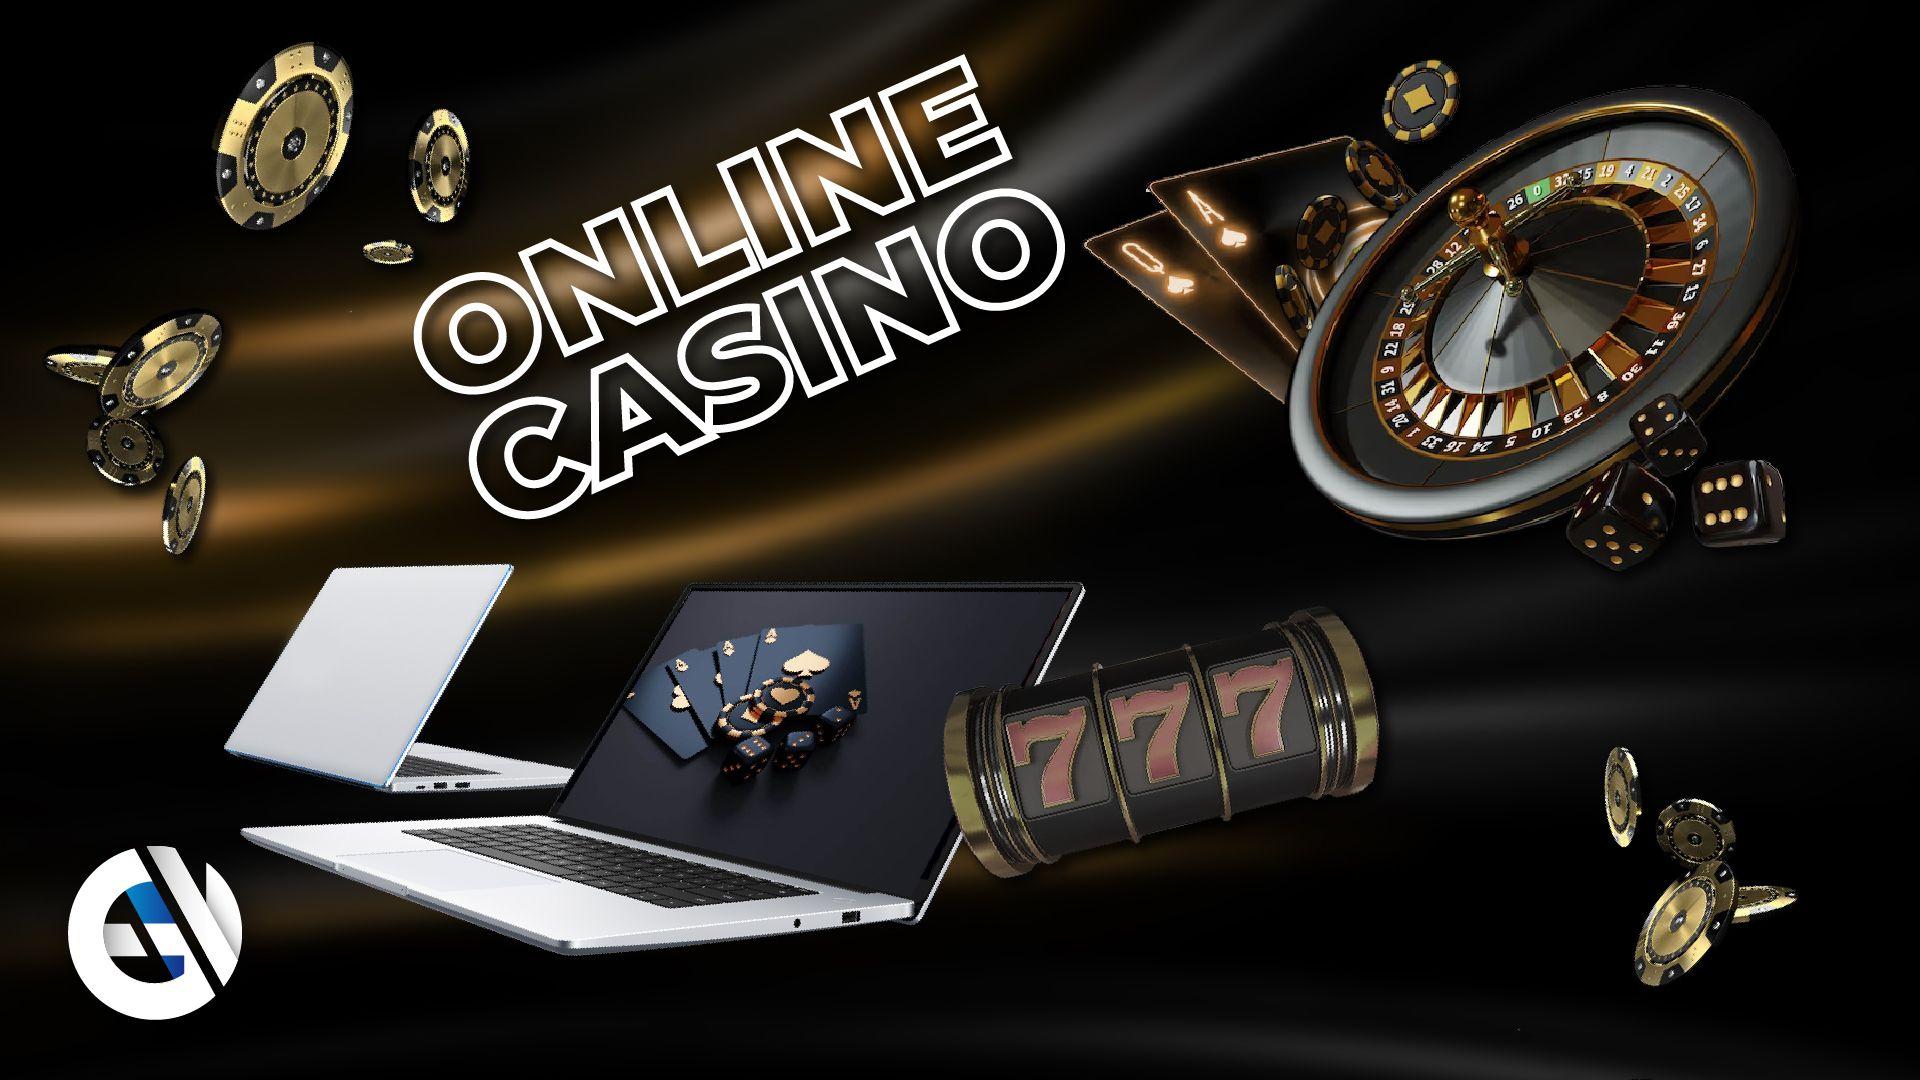 Обеспечение безопасности в мире онлайн-казино: Практическое руководство для ответственных игроков